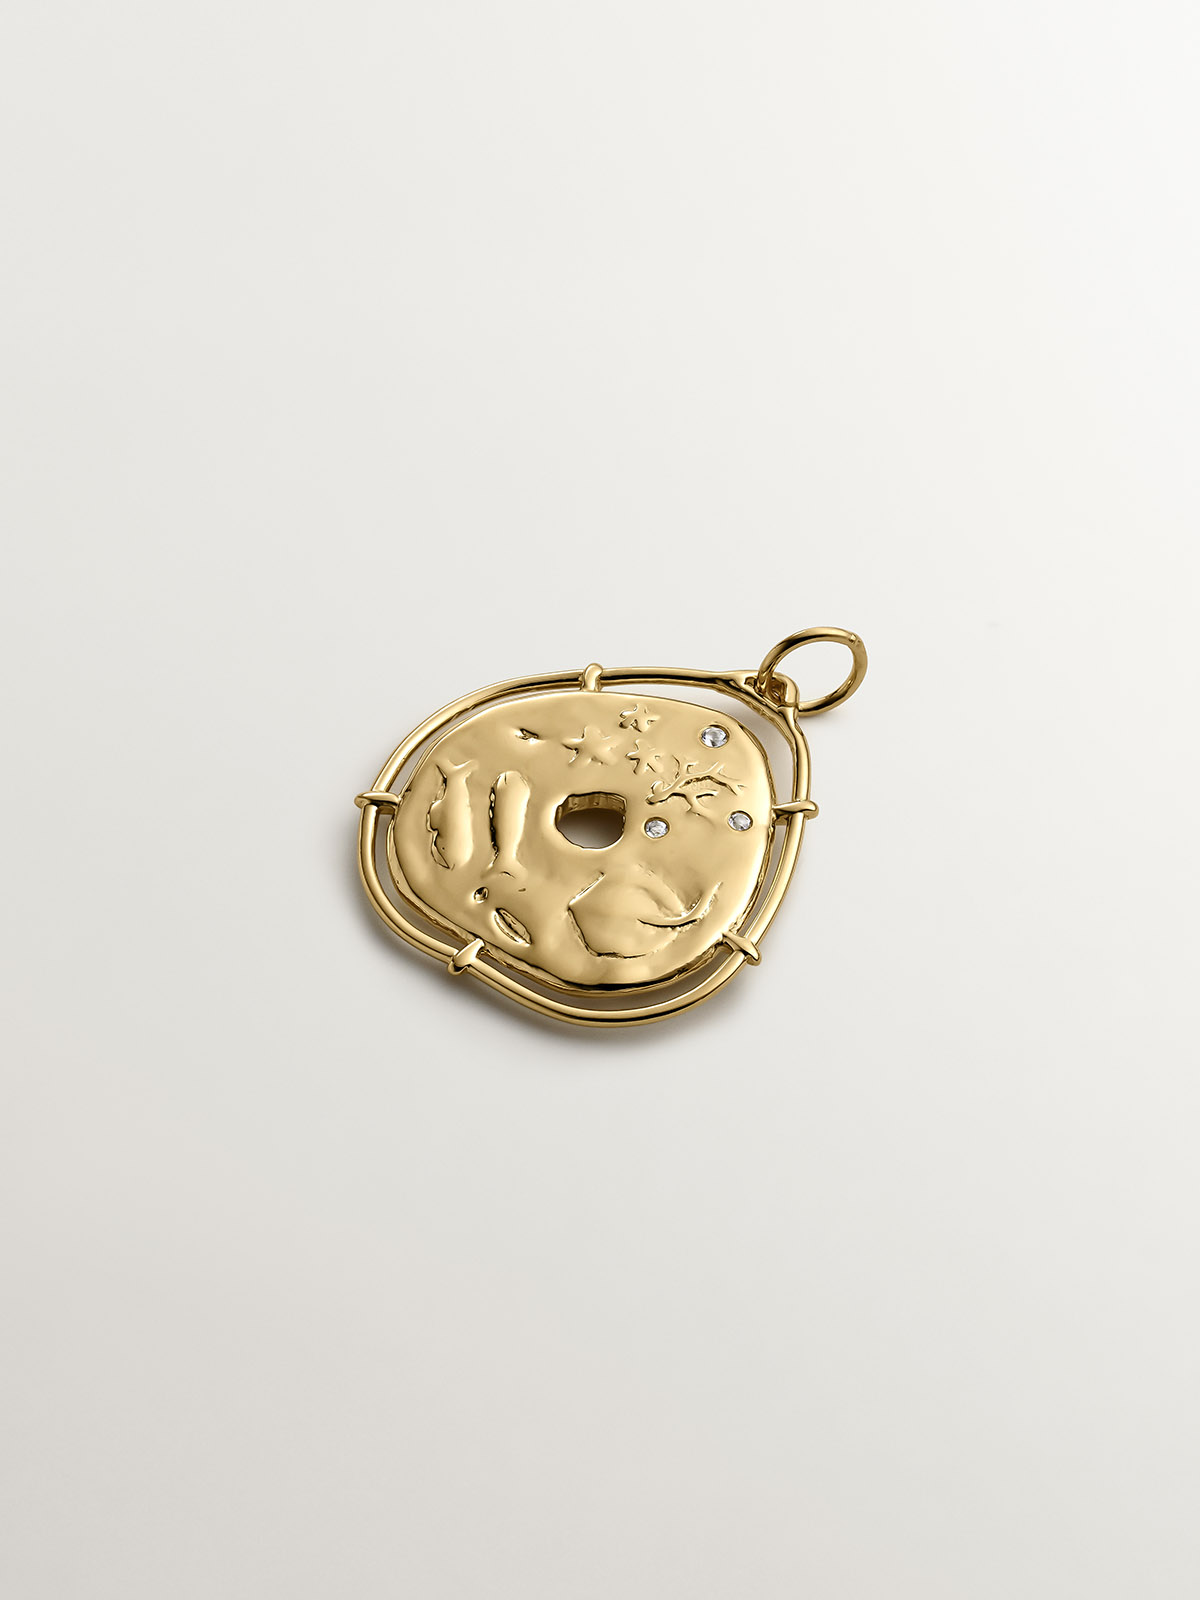 Charm de plata 925 bañada en oro amarillo de 18K con forma de medalla irregular y topacios blancos